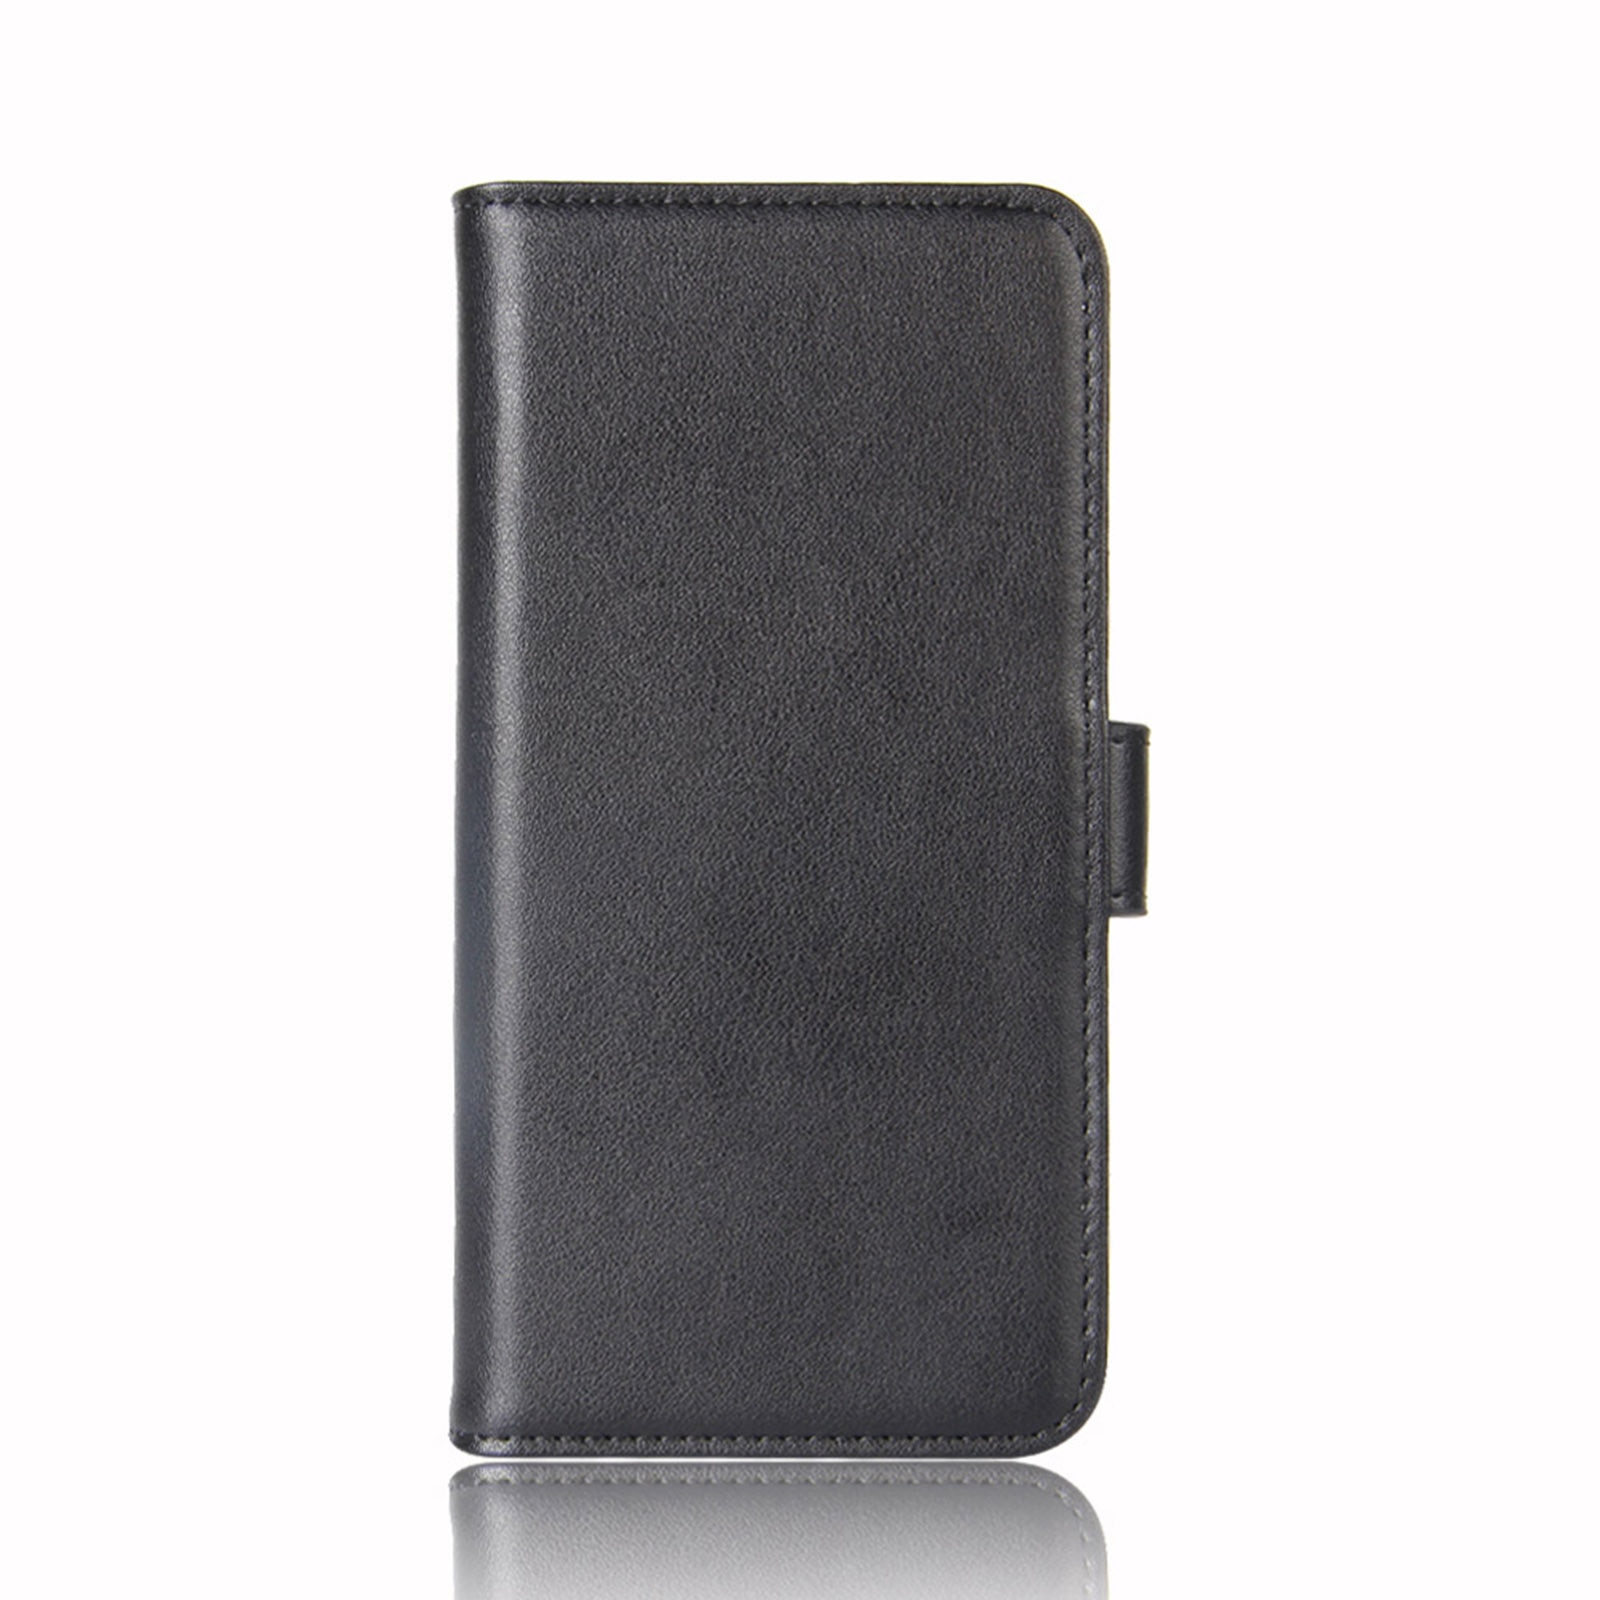 Sony Xperia 10 II Plånboksfodral i Äkta Läder, svart